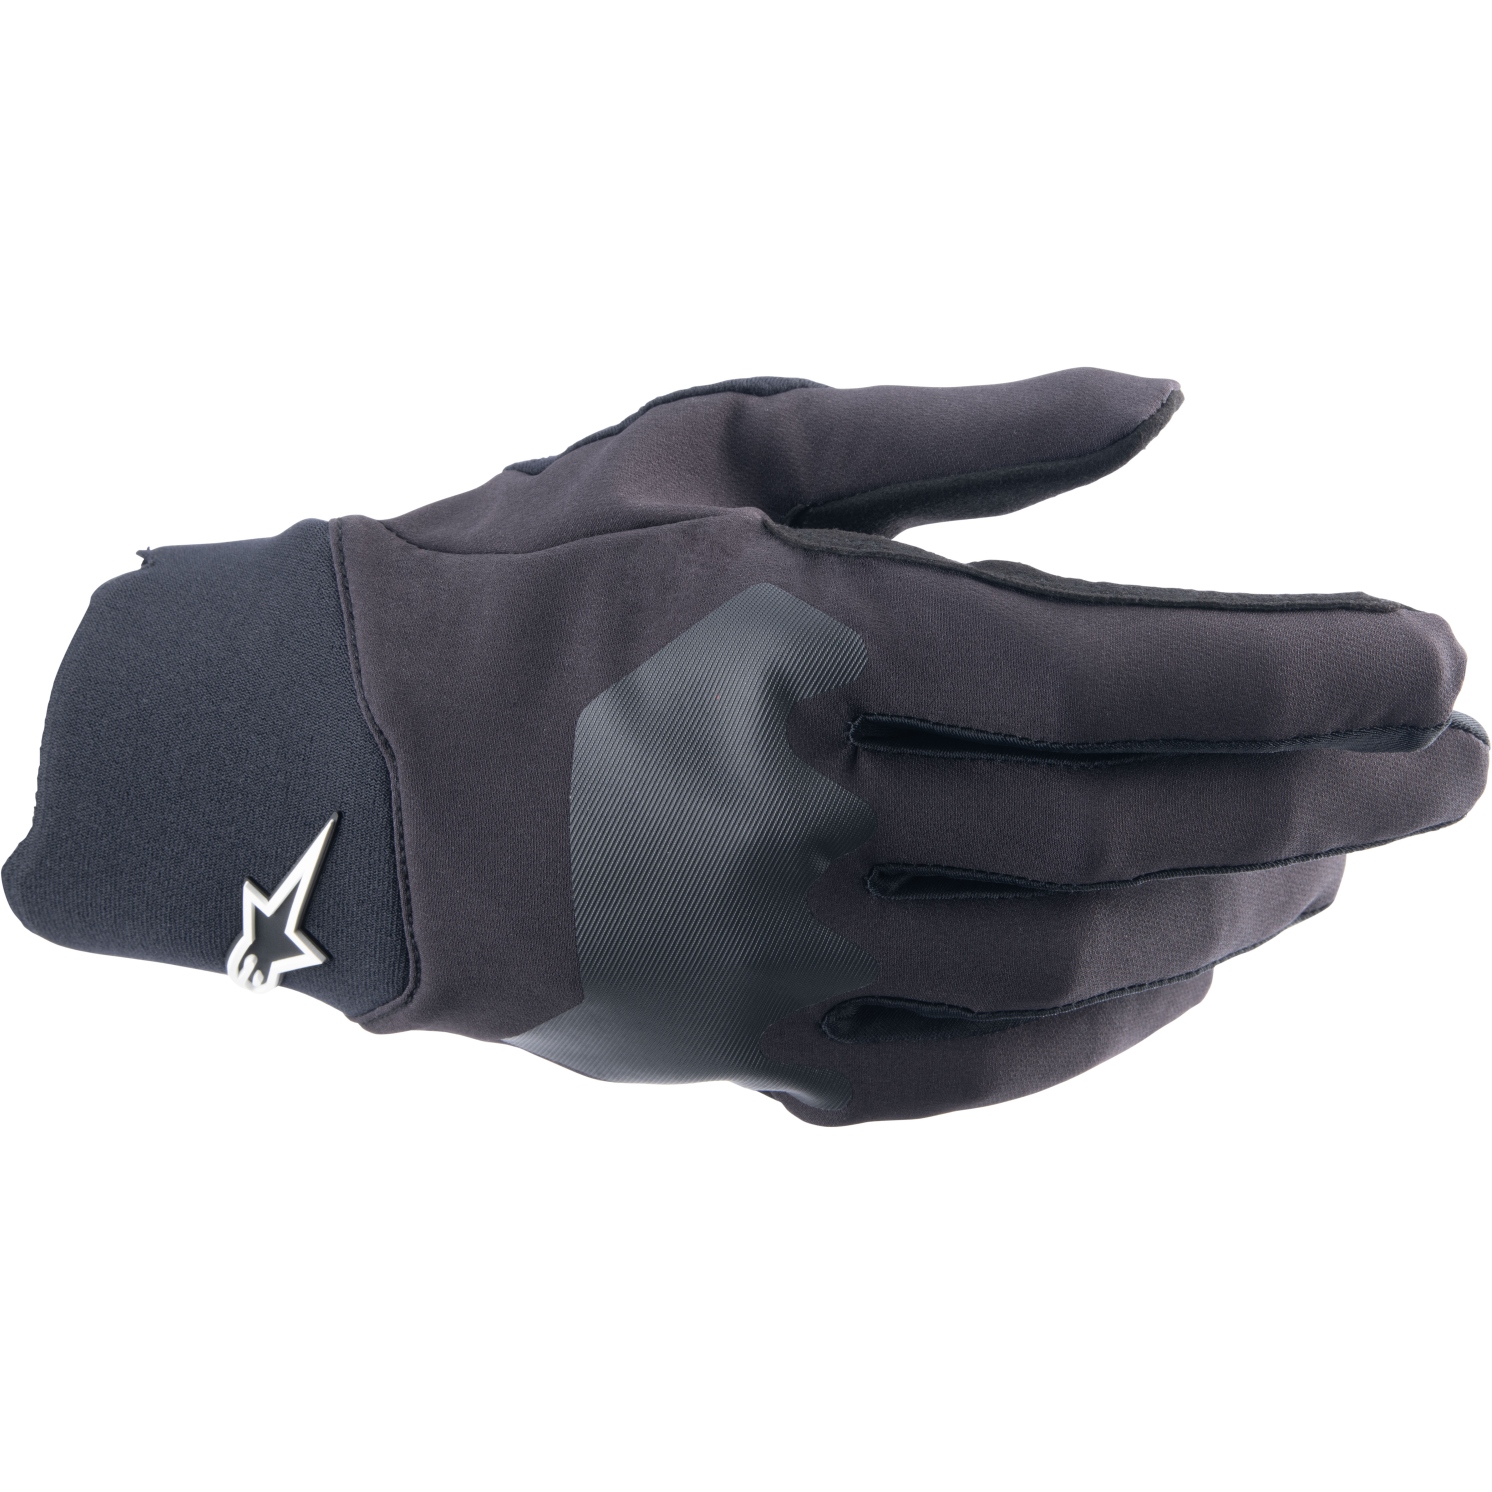 Productfoto van Alpinestars A-Supra Handschoenen - zwart